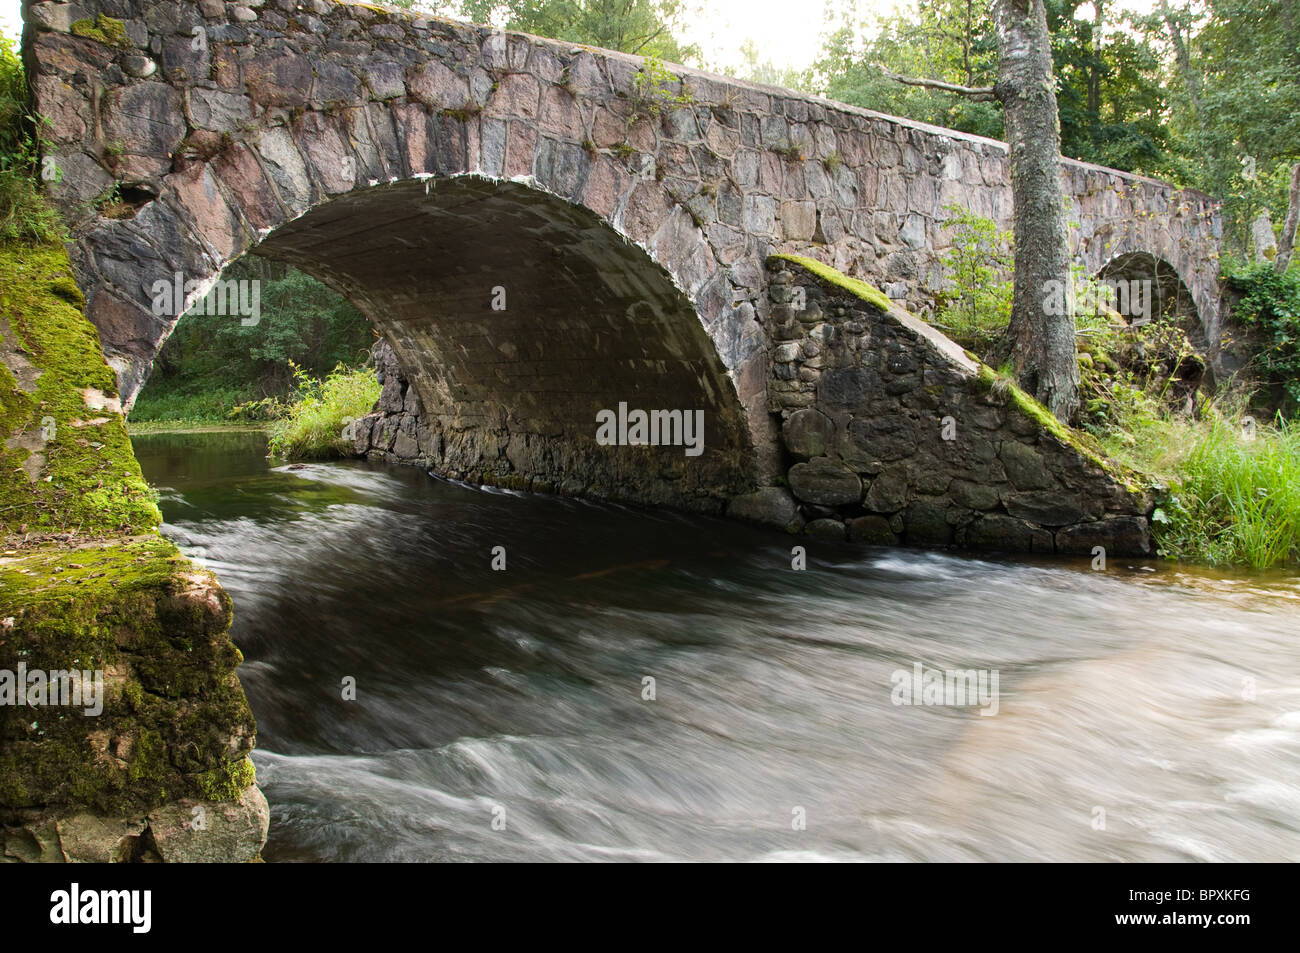 Un antico ponte in pietra con due archi - Otten Mills, Sud Estonia Foto Stock